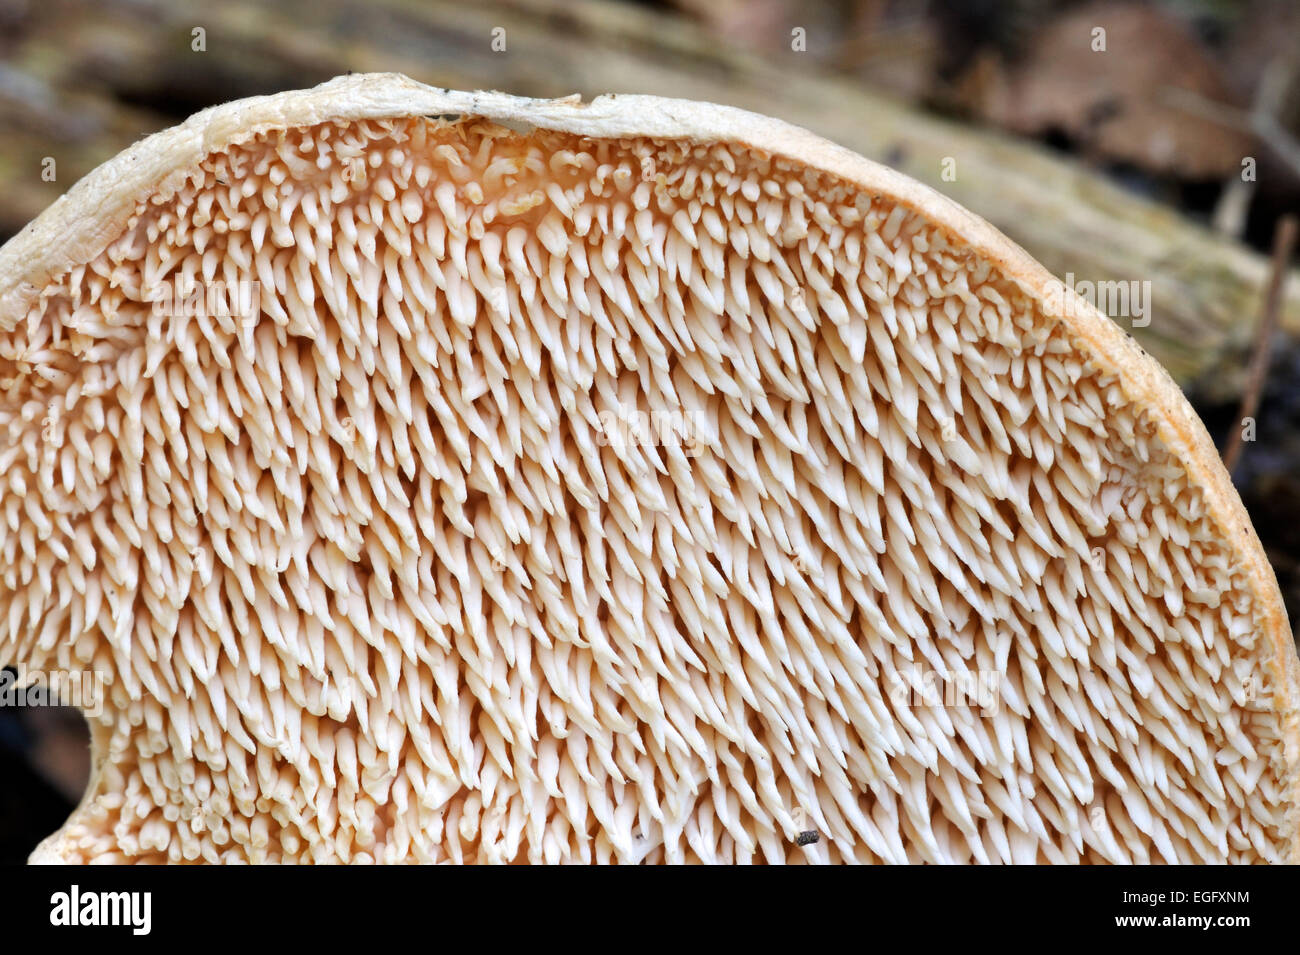 Sweet tooth / wood hedgehog / hedgehog mushroom (Hydnum repandum) underside showing spines Stock Photo